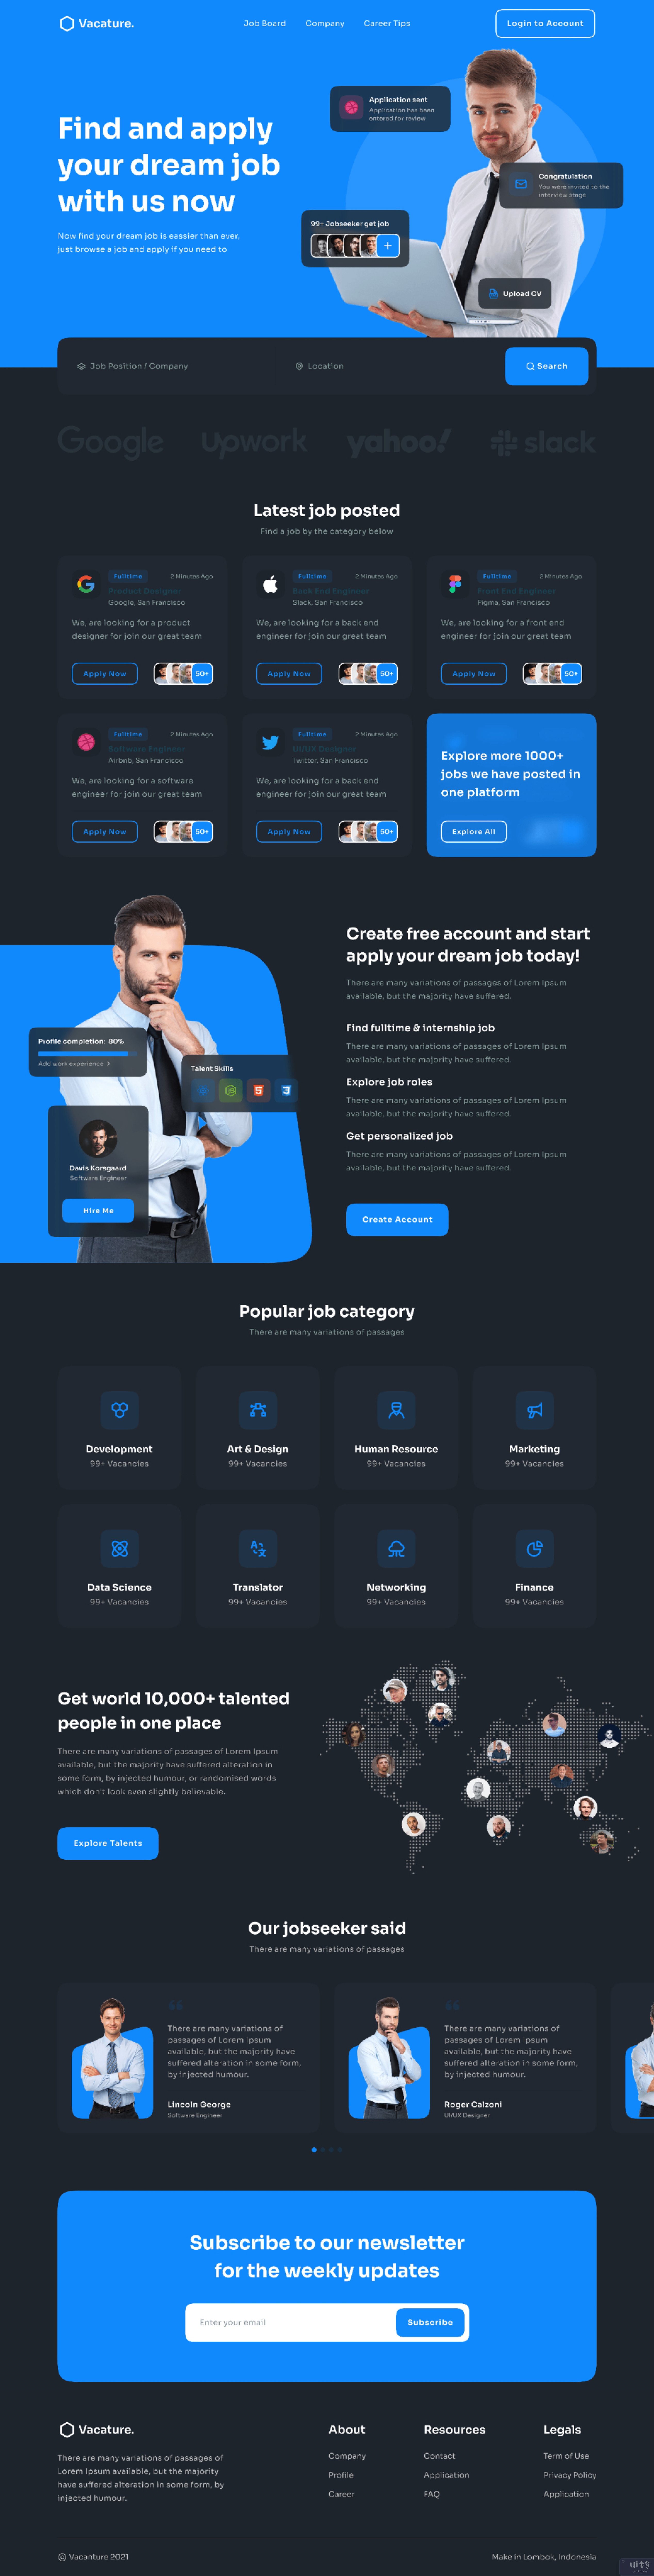 求职者 |网页设计用户界面(Job Finder | Web Design UI)插图1